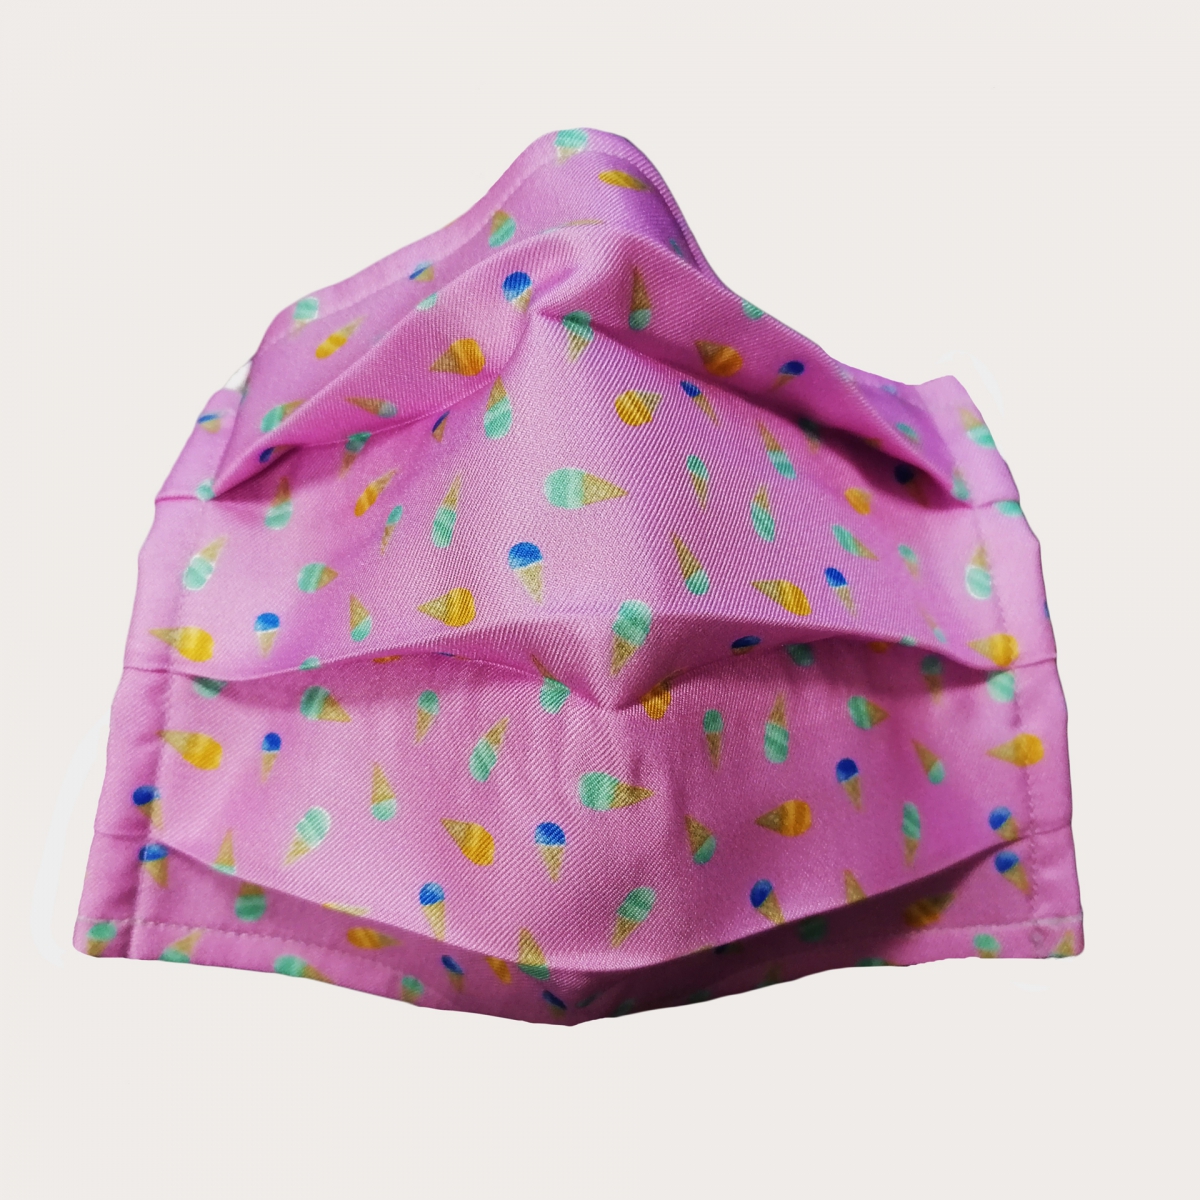 Wiederverwendbare schutzmasken für Kinder seiden rosa Eistüten